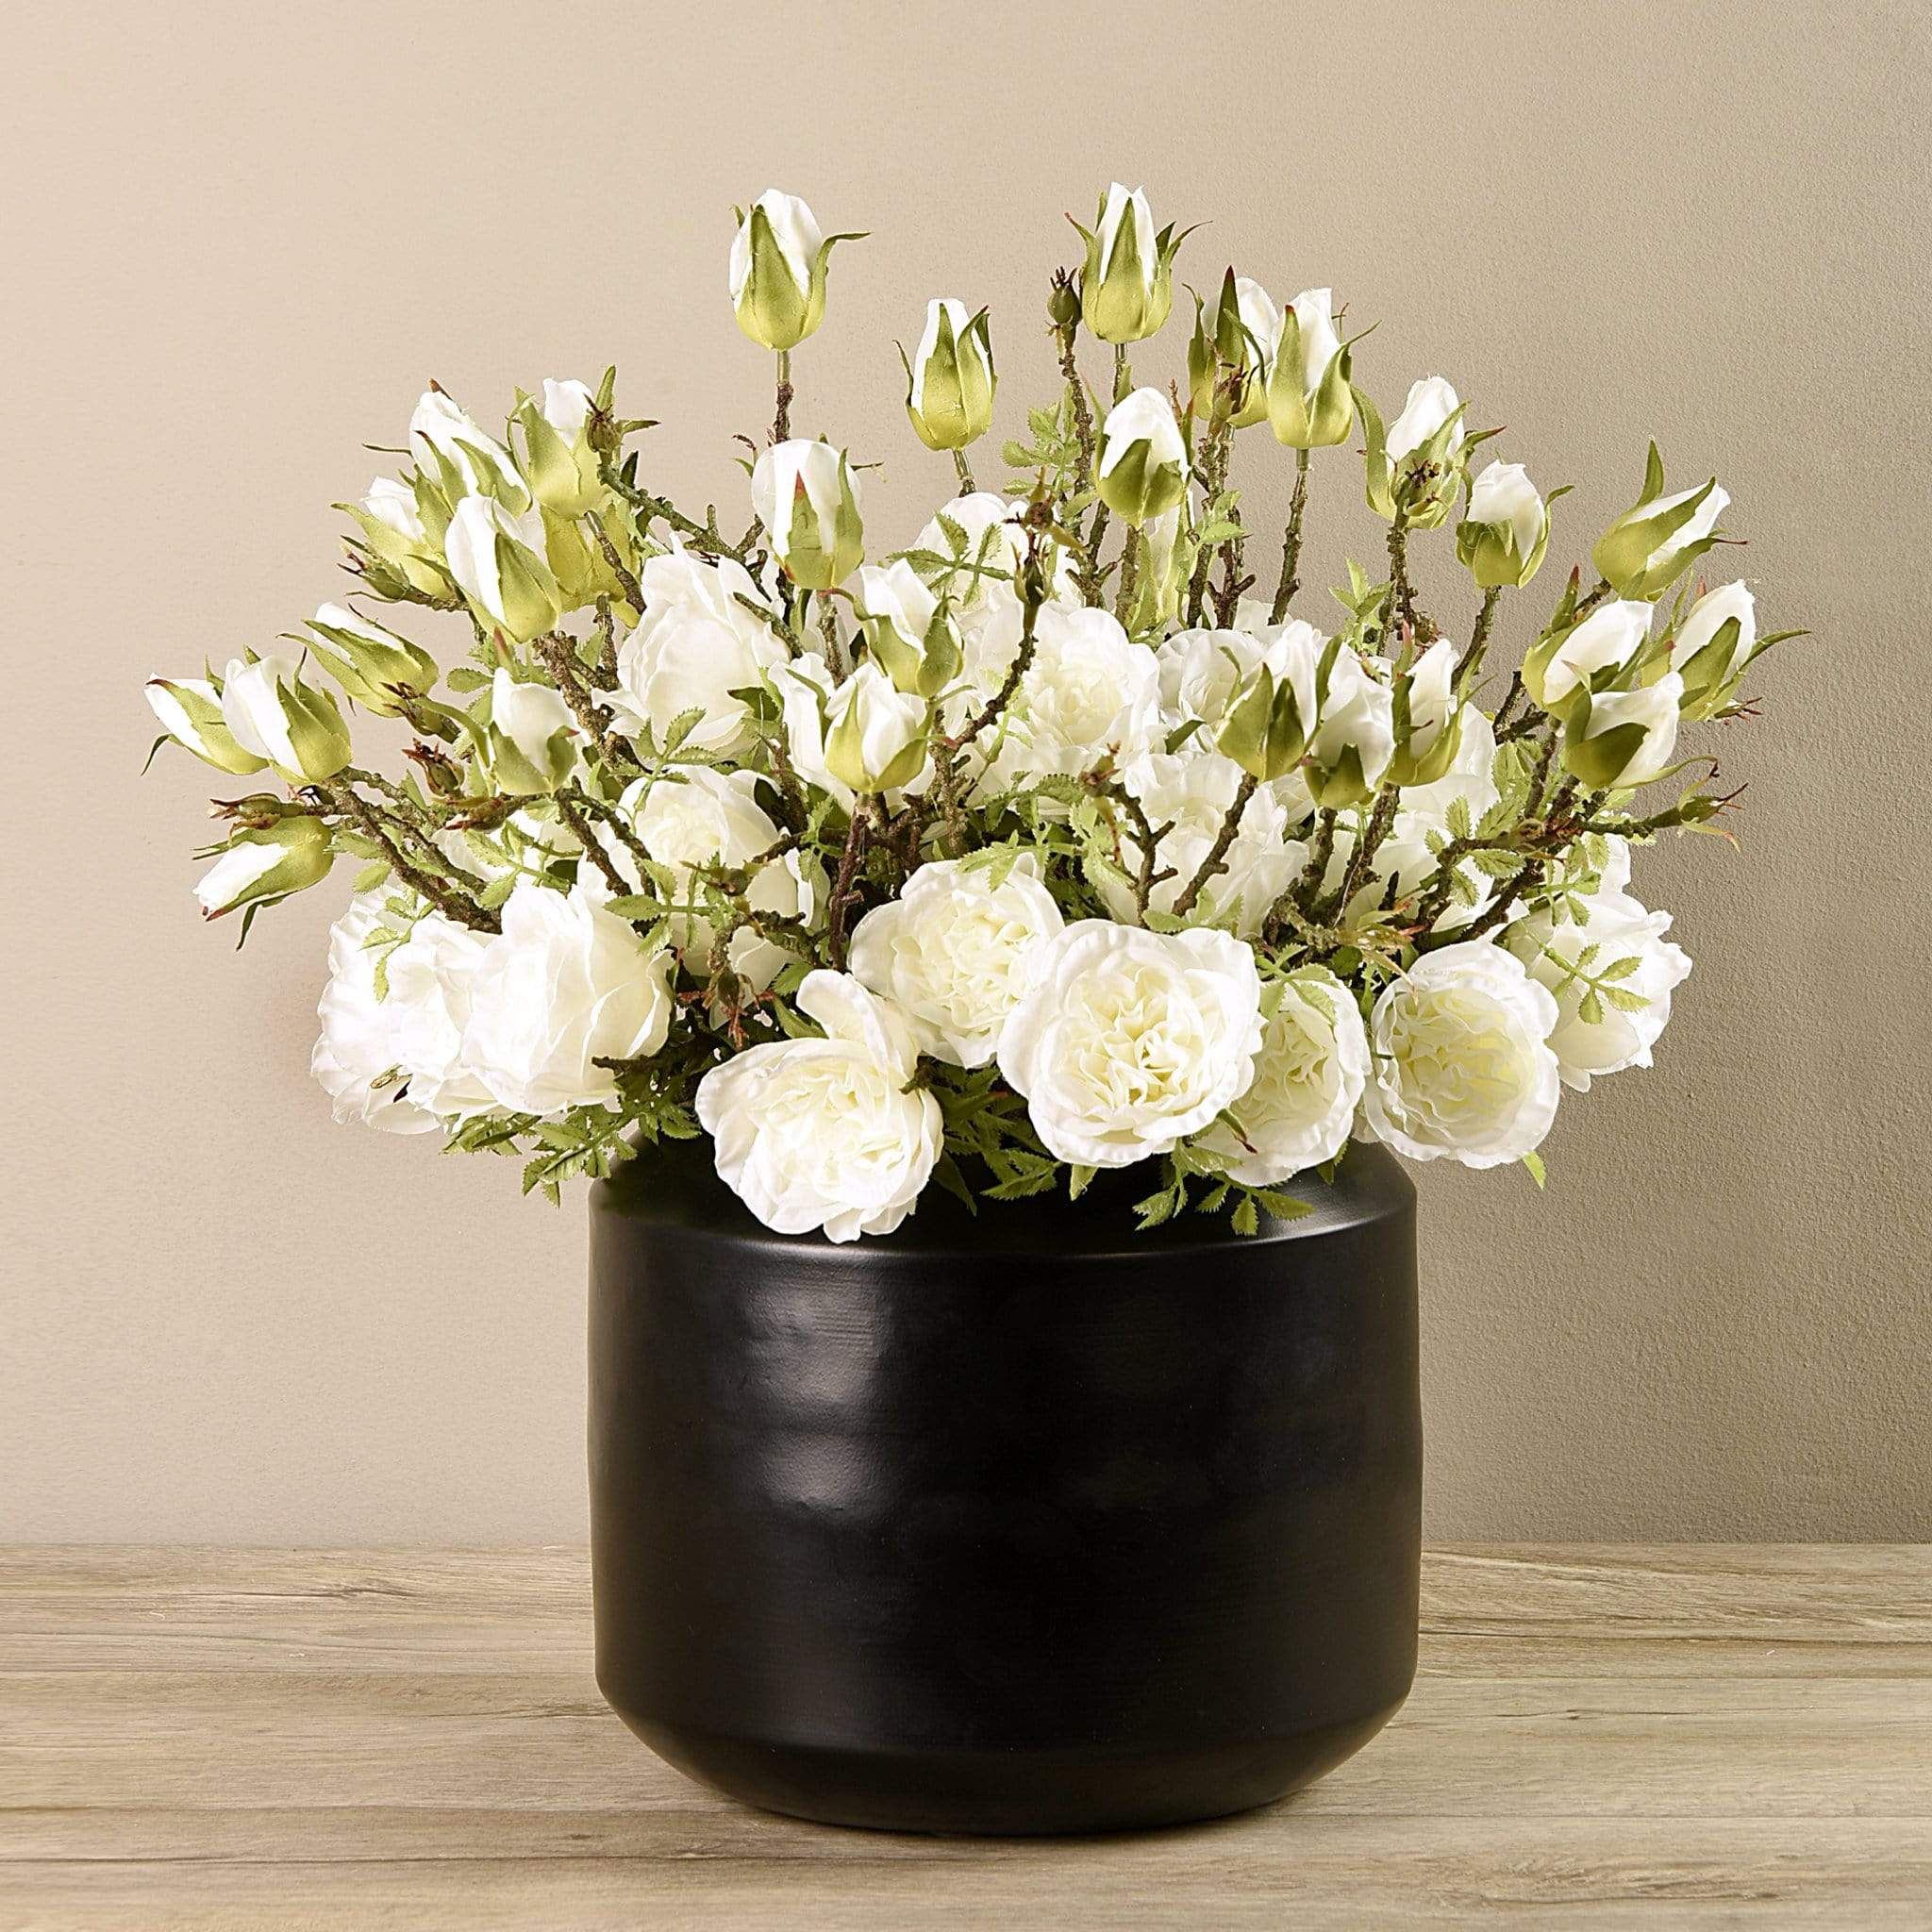 Artificial Rose Arrangement in Black Vase - Bloomr